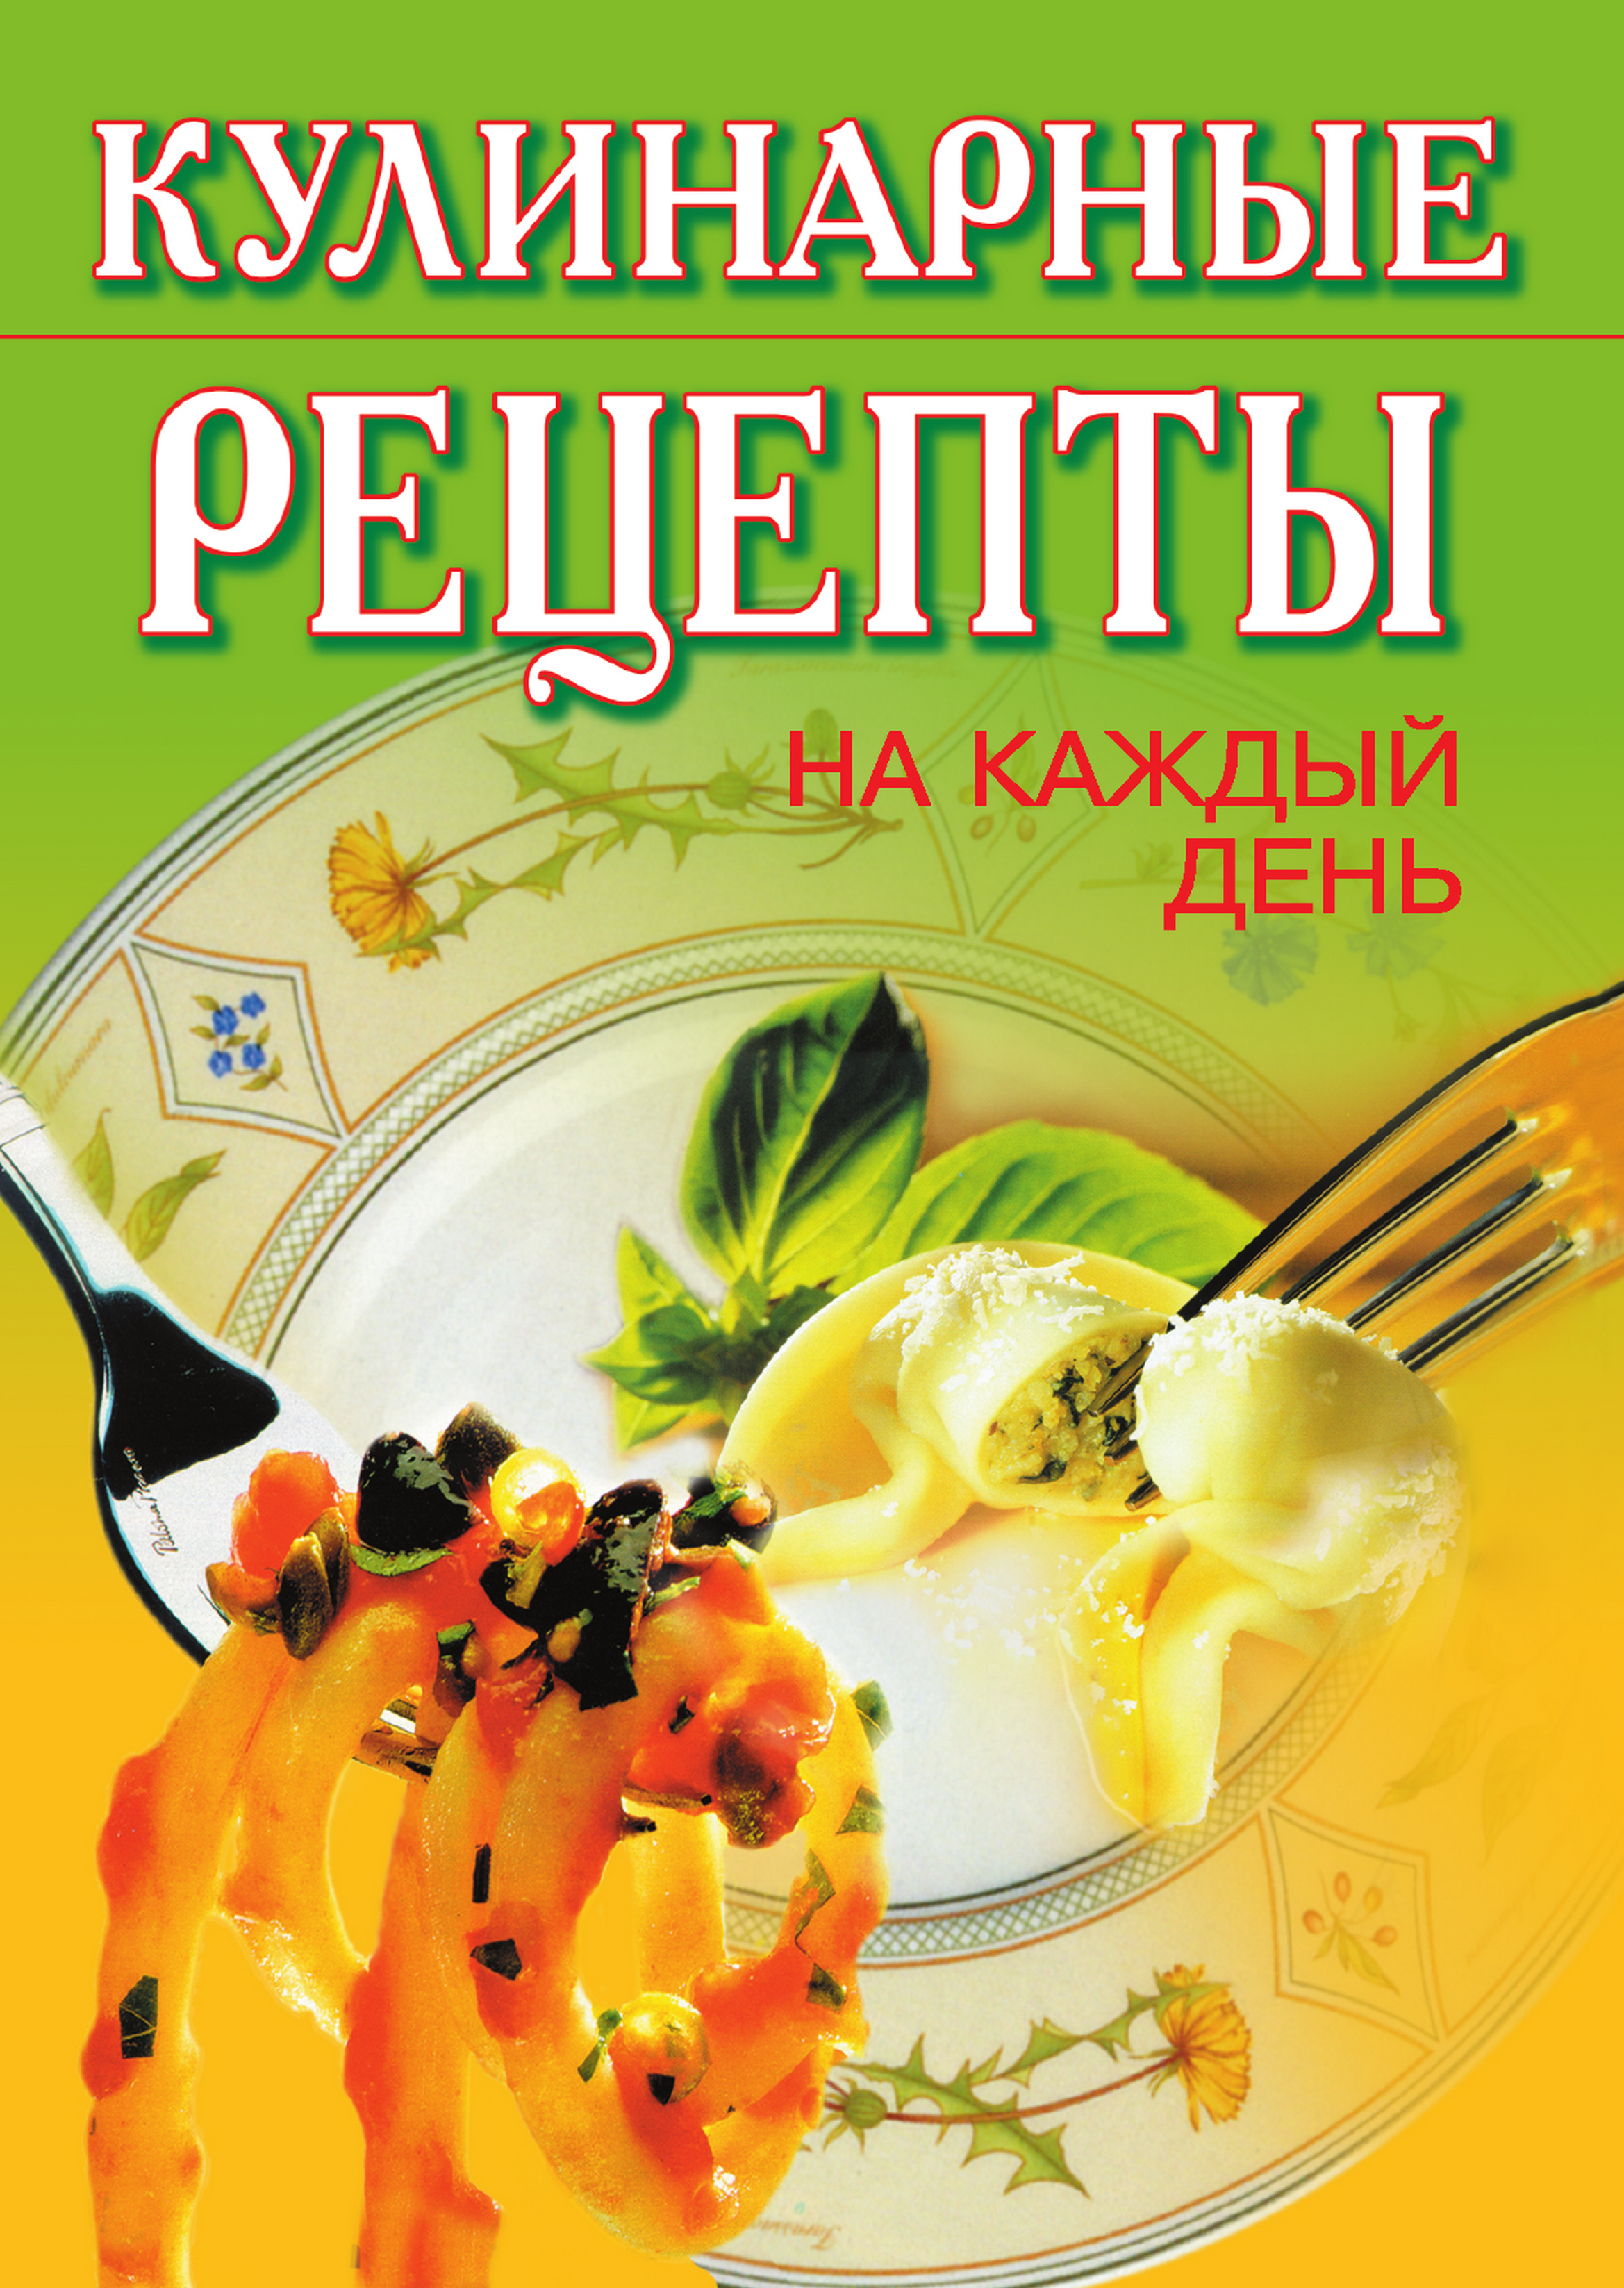 Книга Кулинарные рецепты на каждый день из серии , созданная Т. Никифорова, может относится к жанру Кулинария. Стоимость электронной книги Кулинарные рецепты на каждый день с идентификатором 324772 составляет 45.00 руб.